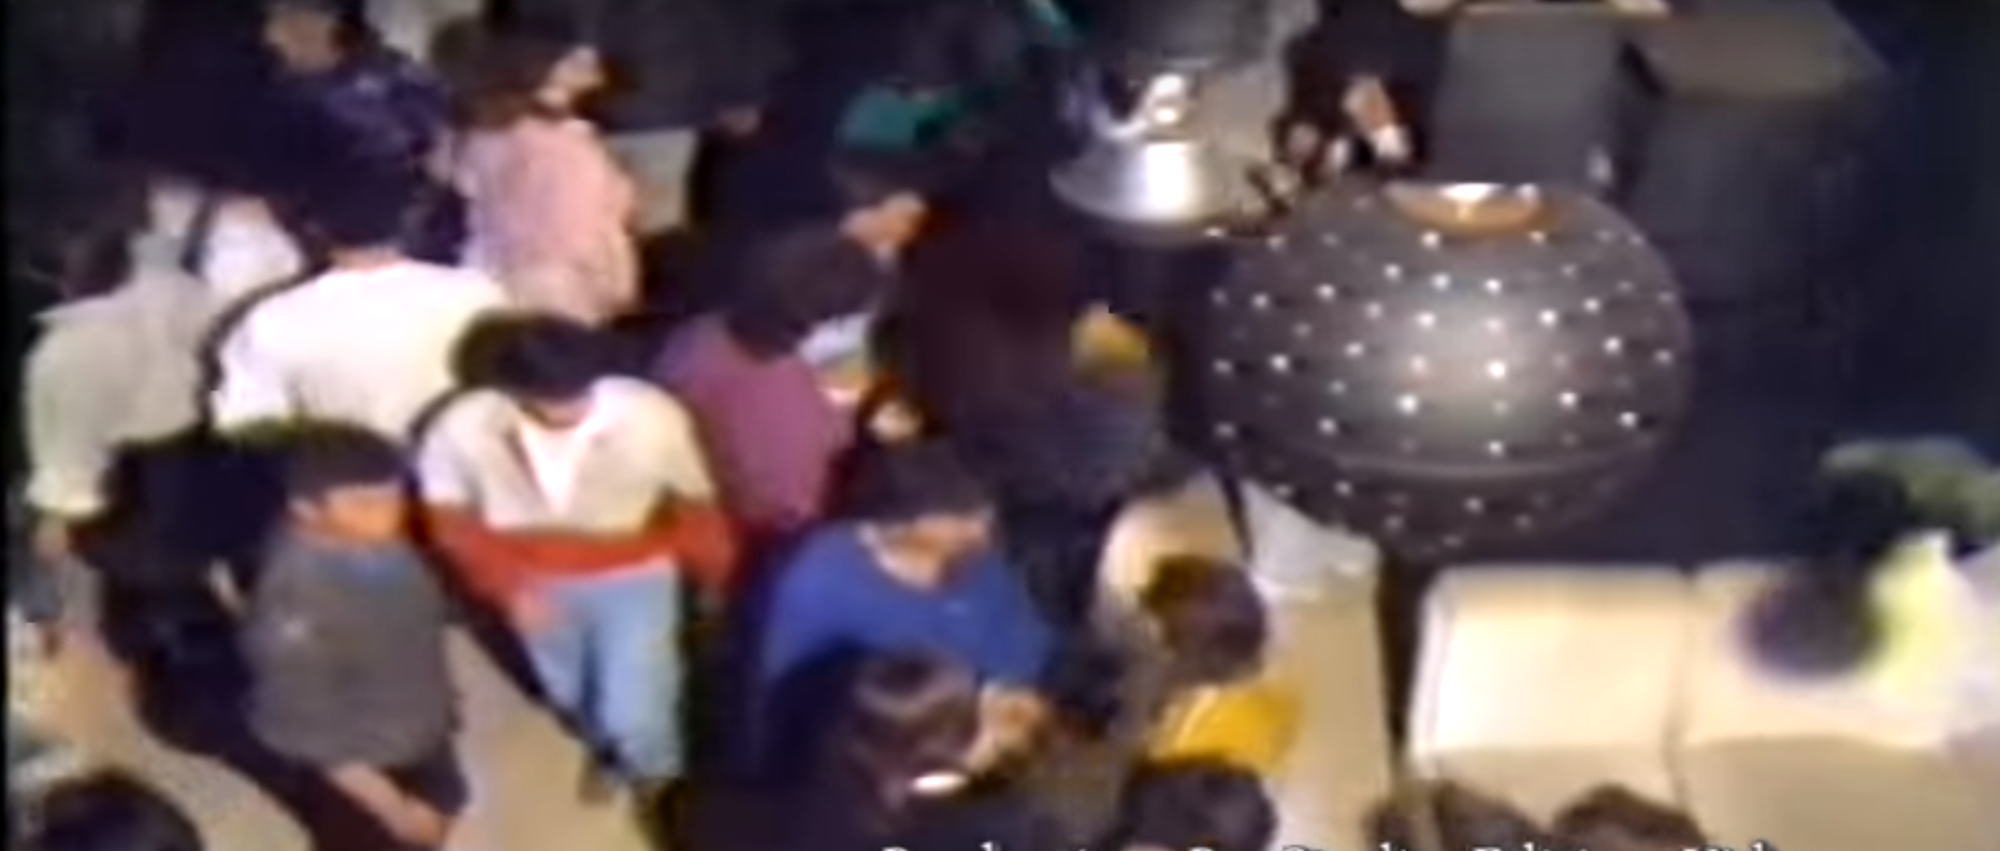 Η νυχτερινή διασκέδαση στην Λάρισα τις δεκαετίες του '80 και '90 σε μπουζούκια και ντίσκο (βίντεο)